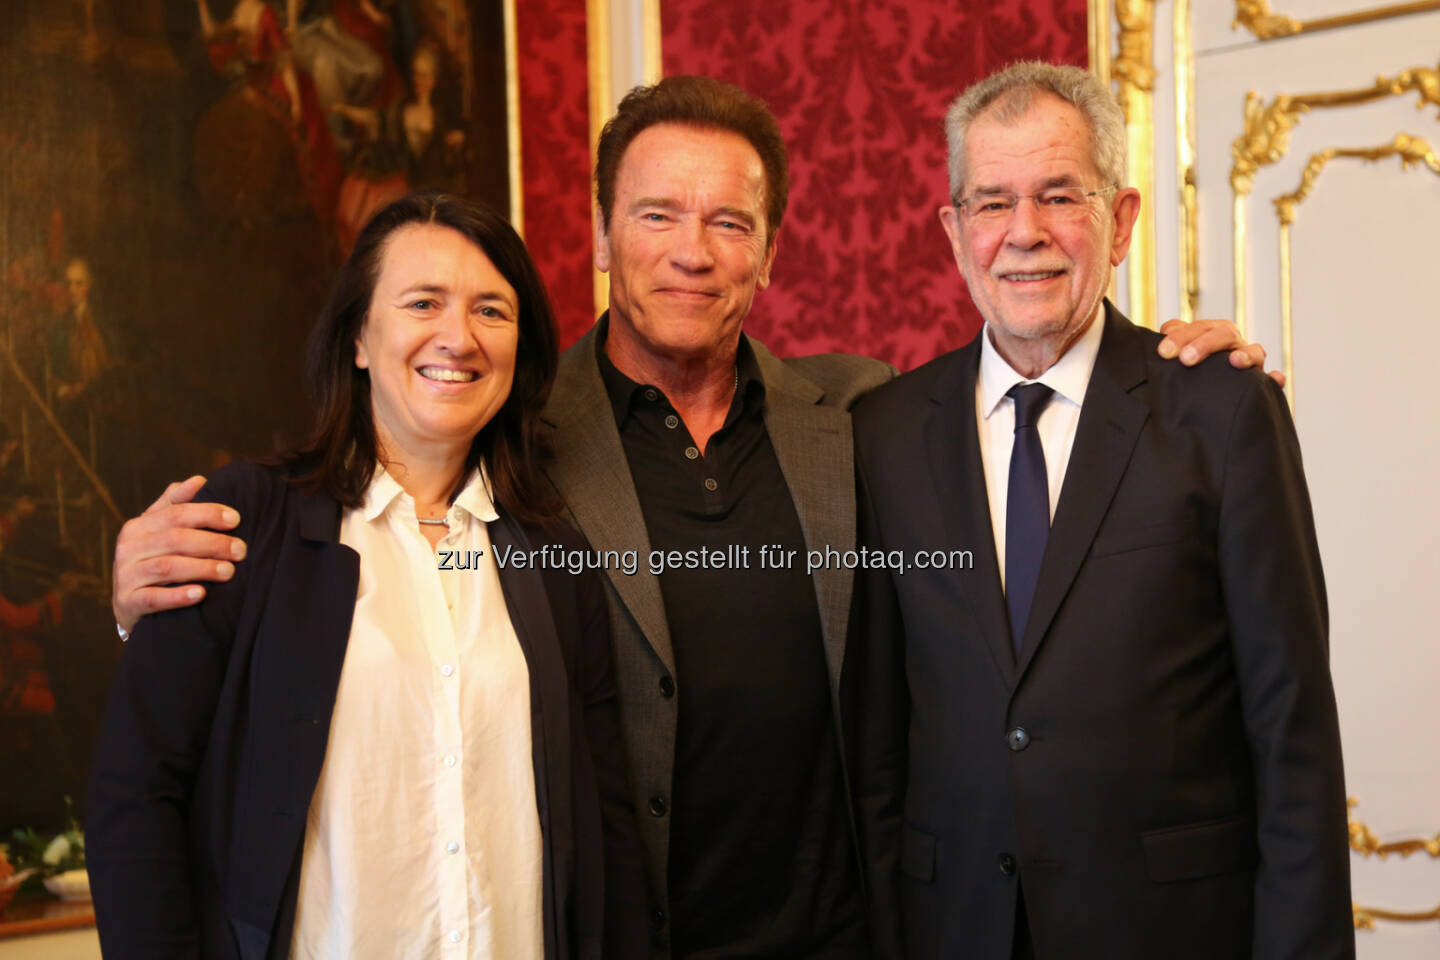 Arnold Schwarzenegger und Monika Langthaler trafen sich zu einem Arbeitsgespräch mit Bundespräsident Alexander Van der Bellen in der Wiener Hofburg - brainbows informationsmanagement gmbh: AUSTRIAN WORLD SUMMIT startet im Juni mit Arnold Schwarzenegger (Fotograf: Martin Hesz / Fotocredit: brainbows)